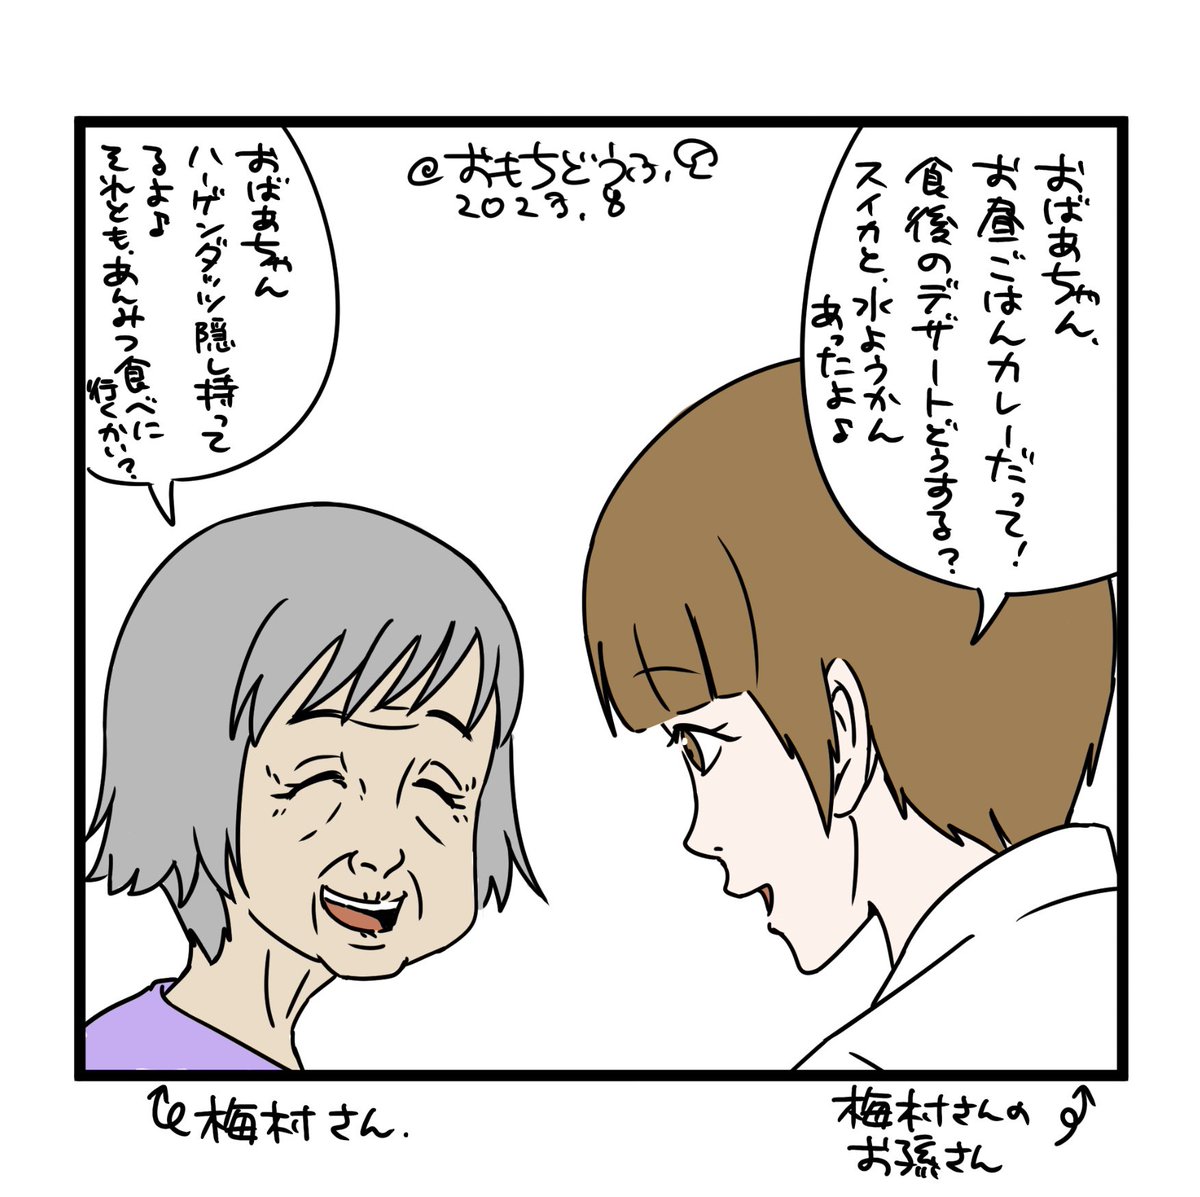 お疲れさまです🥤✨  🔽現在制作中の漫画より、 梅村おばあちゃんとお孫さんのガールズトークです(*'-`)q💭 (※本編の内容とは異なります)  #イラスト #路地裏さん漫画